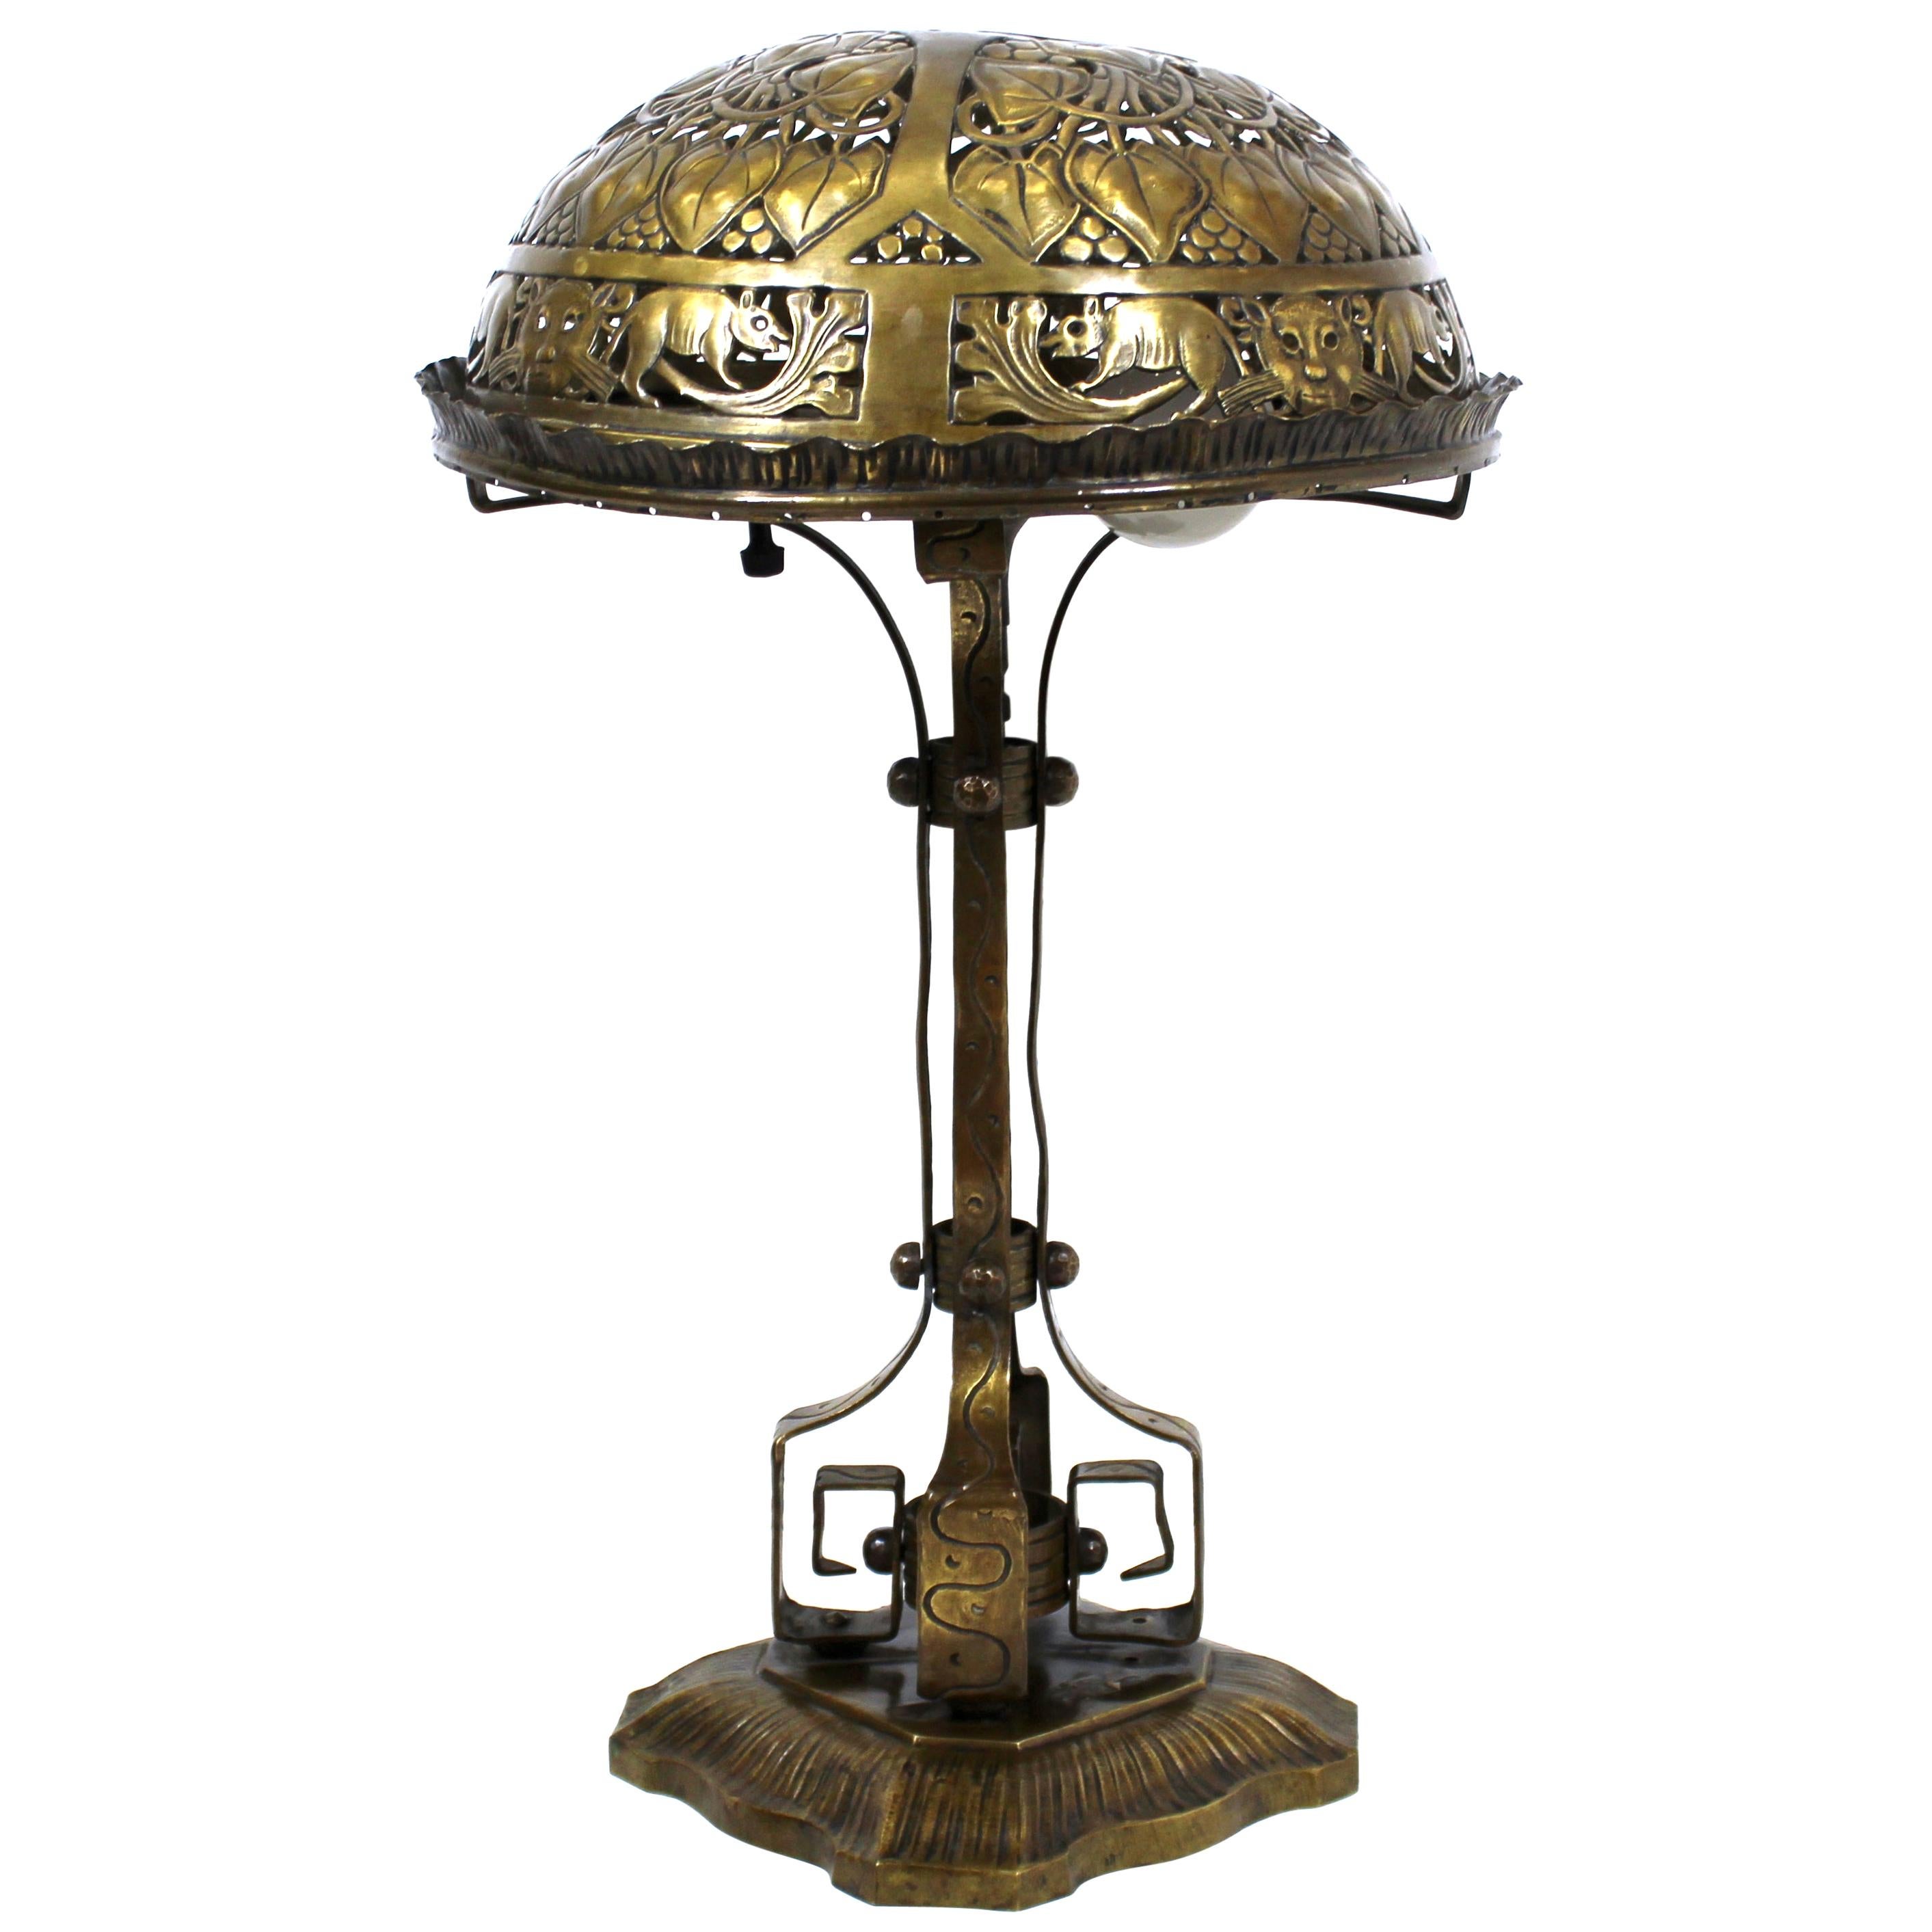 Deutsche Jugendstil-Tischlampe aus Messing und Bronze, Repousse, Oscar Bach zugeschrieben